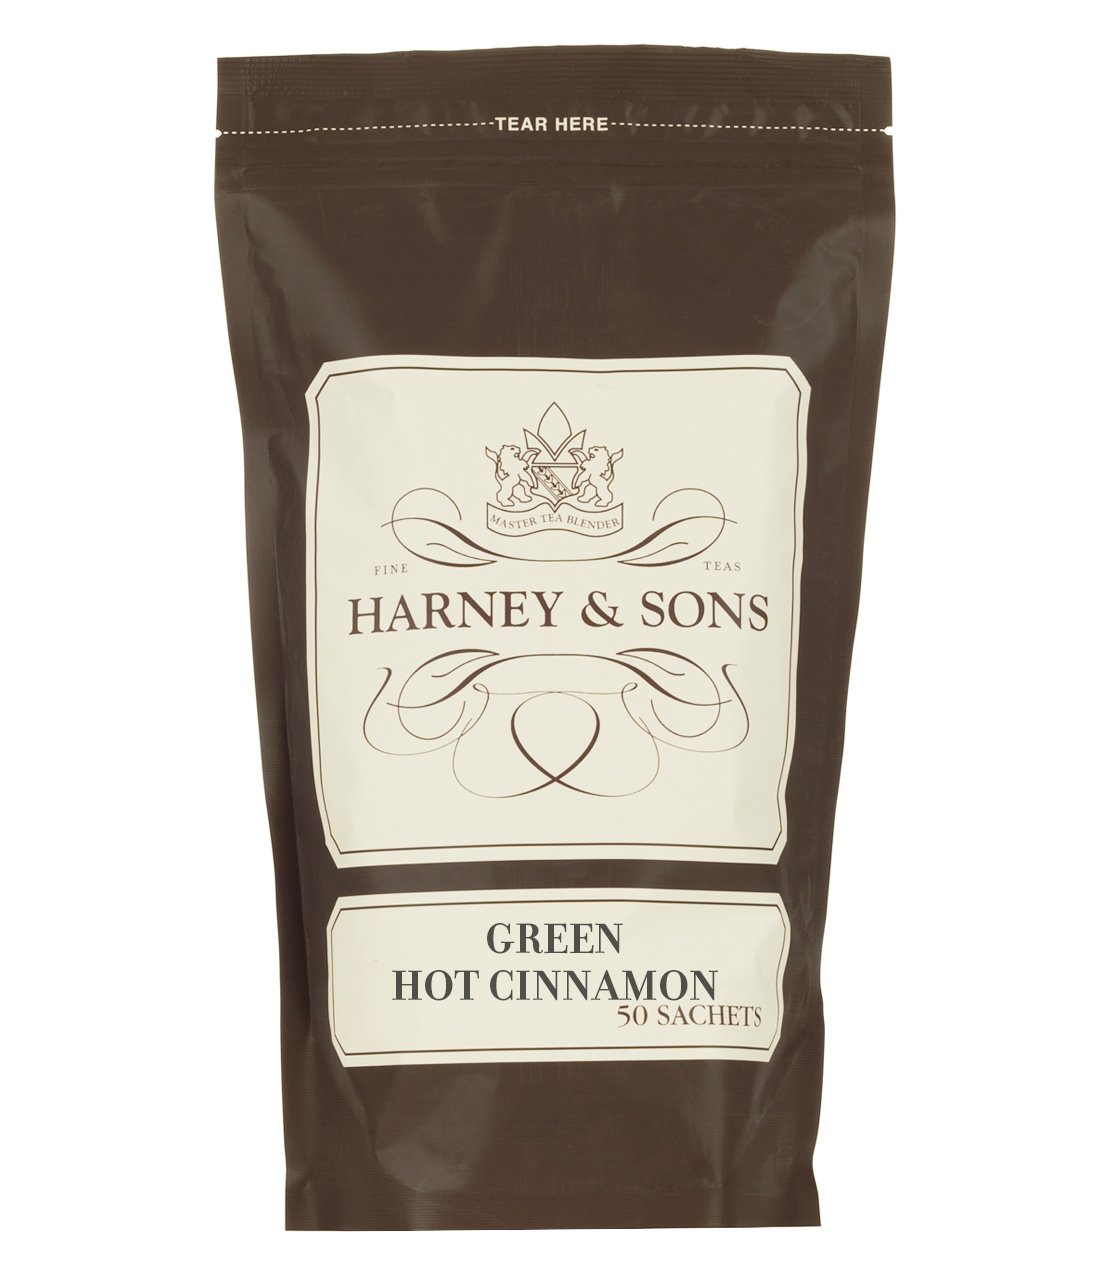 Green Hot Cinnamon Spice, Bag of 50 Sachets - Green Teas with Cinnamon - Harney & Sons Fine Teas Europe